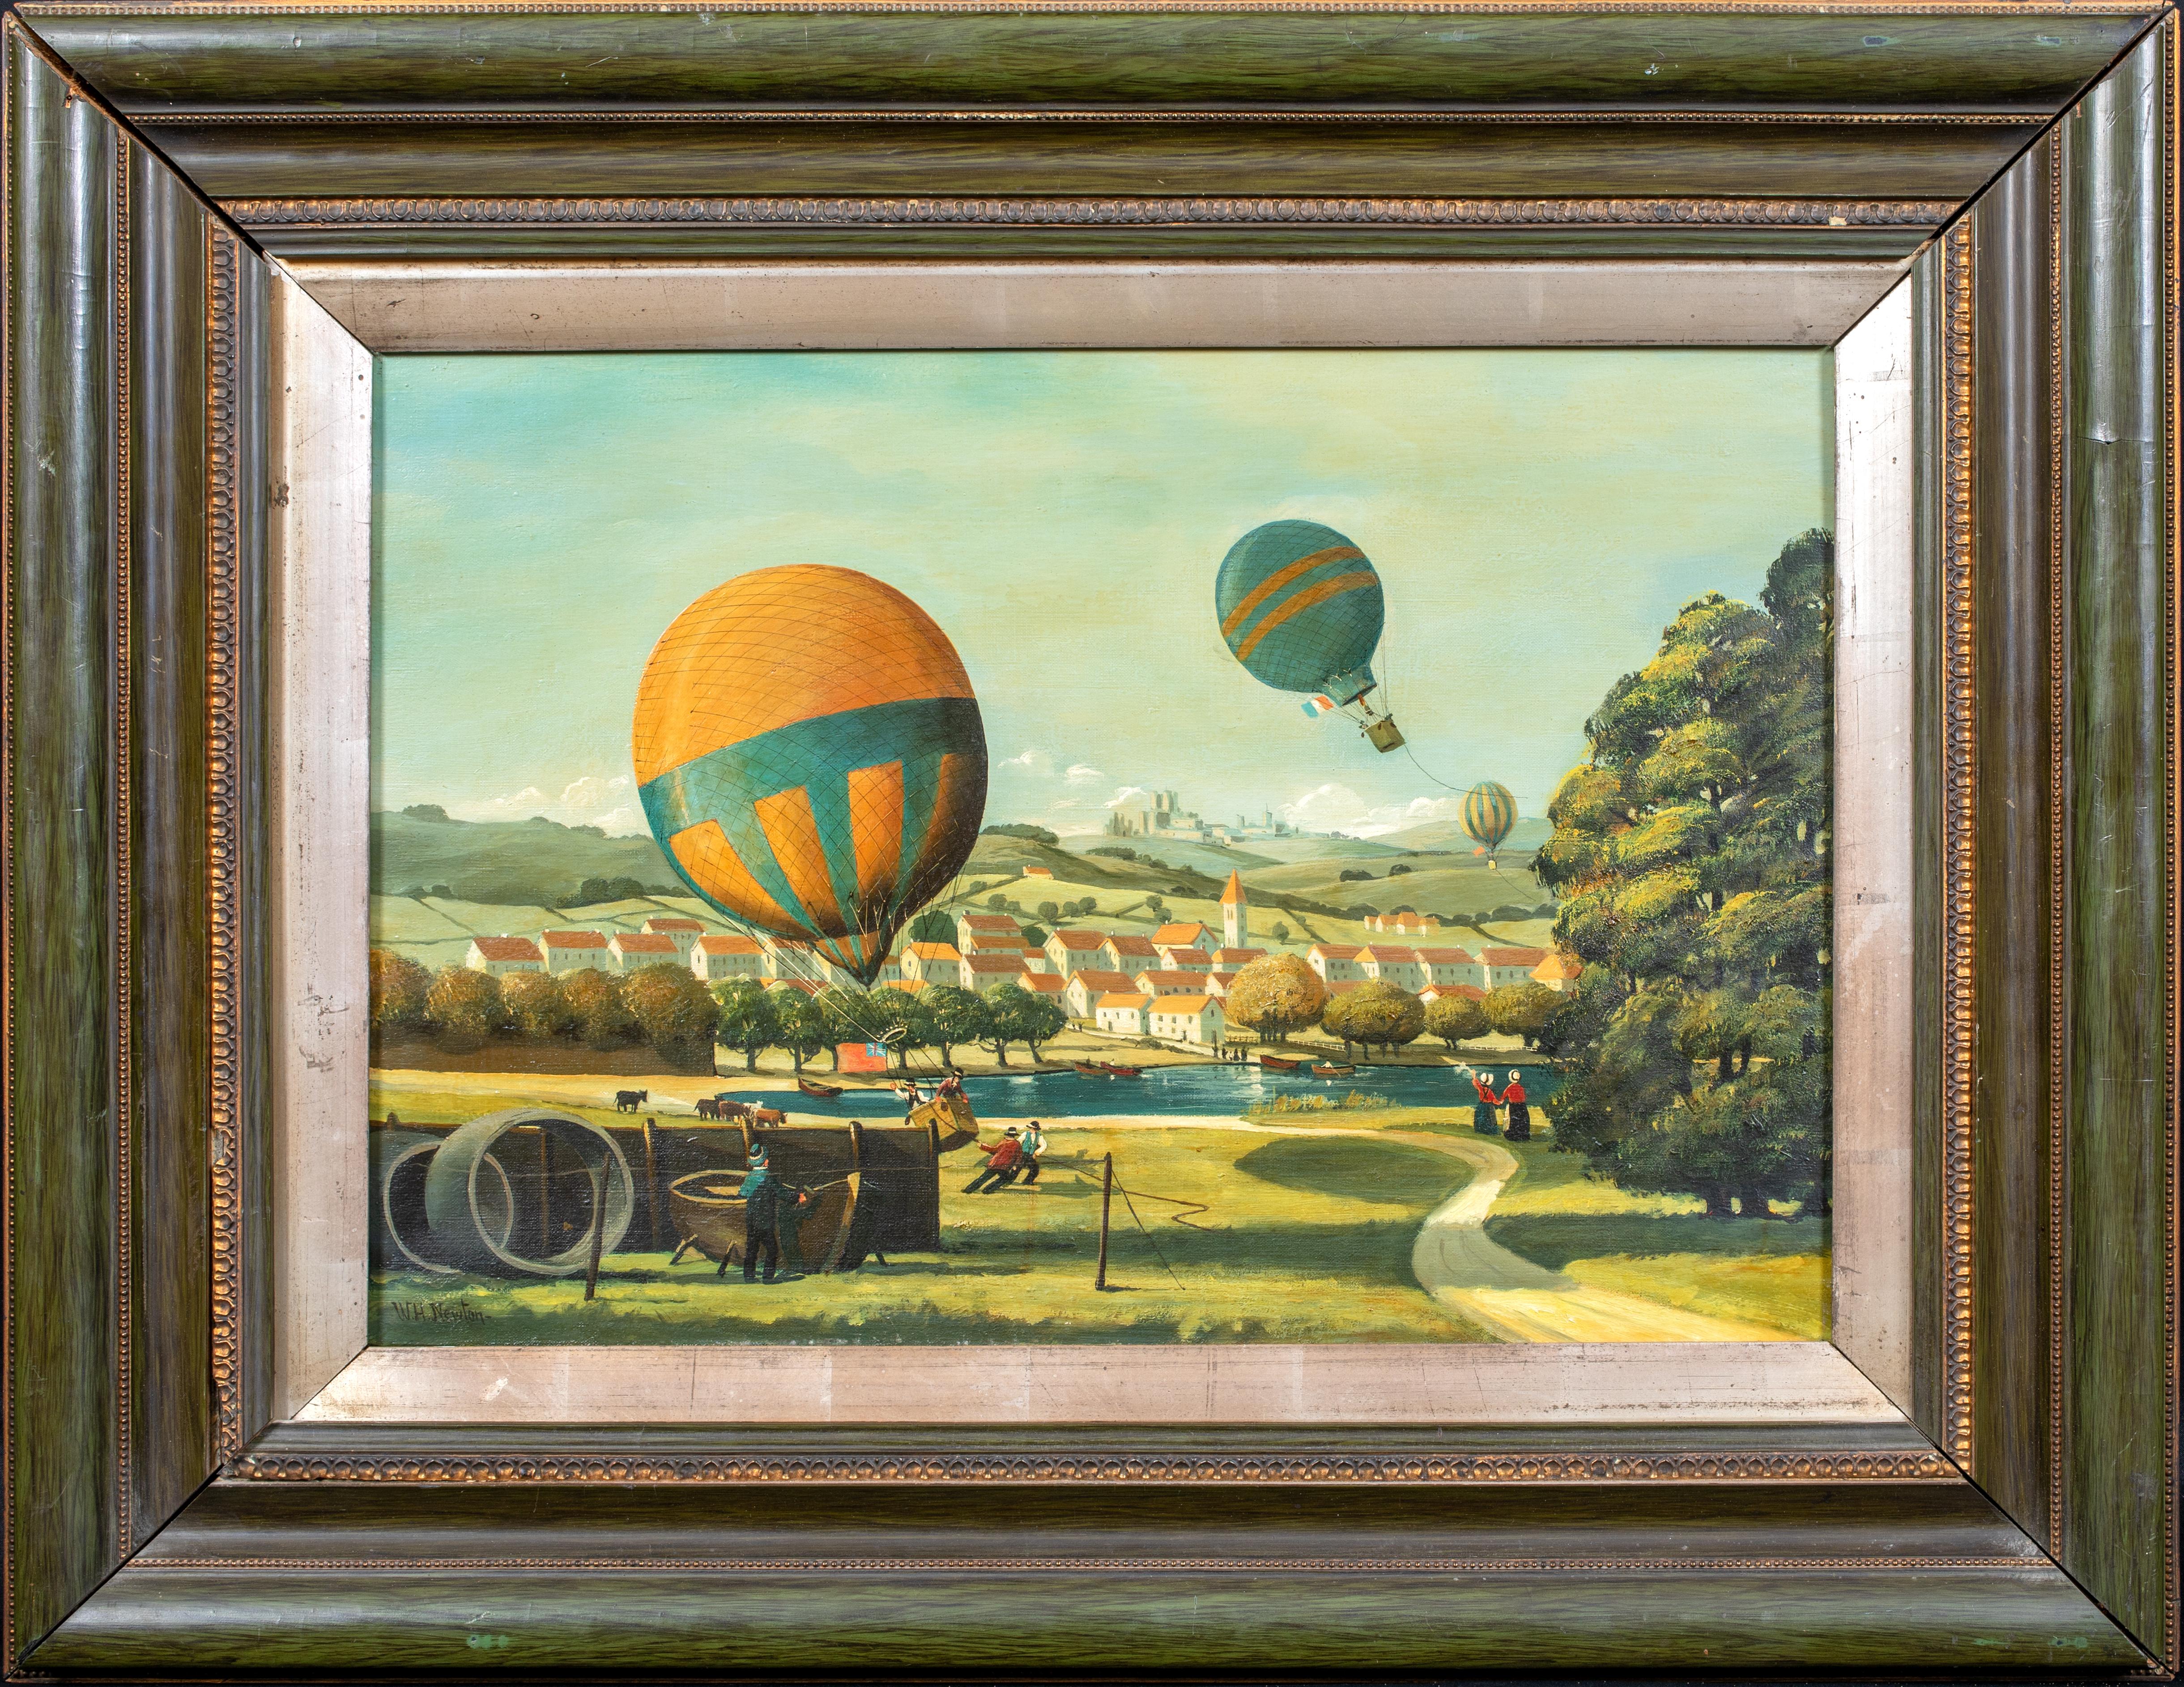 Paysage de course de ballons d'aviation aérienne, vers 1900  École d'Angleterre - signée W H NEWTON - Painting de Unknown